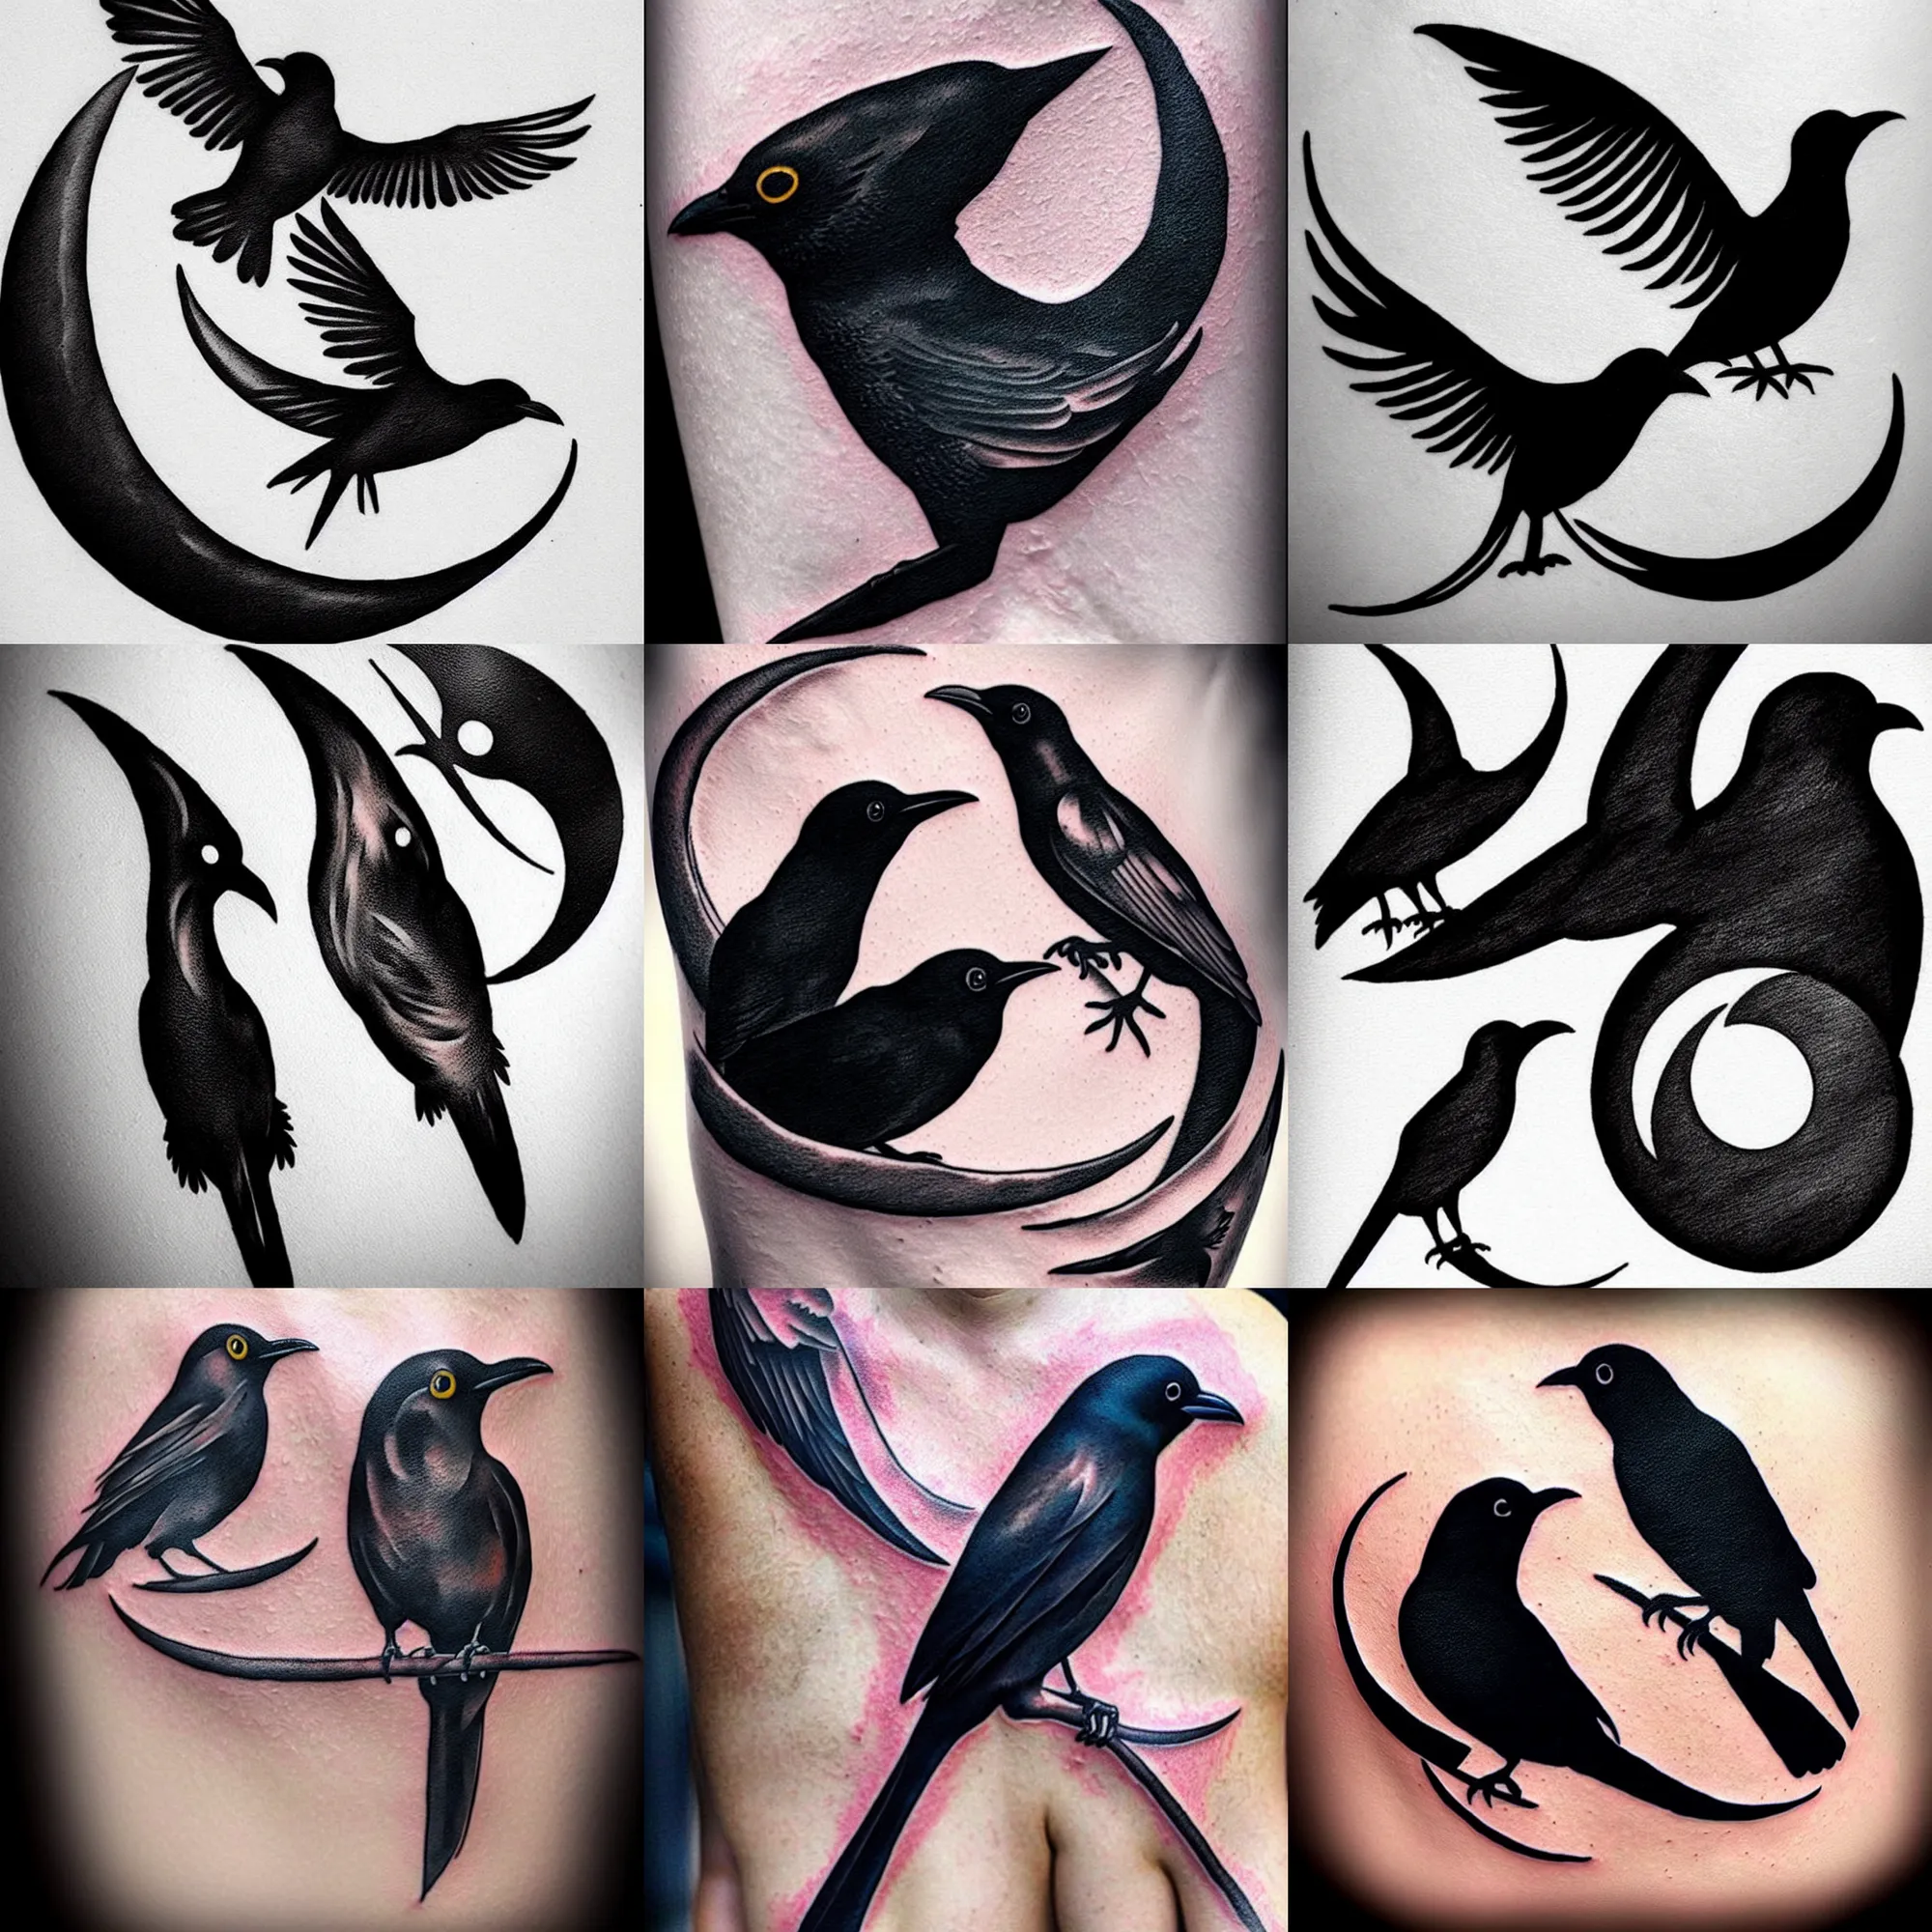 Watercolour bird tattoo design by thirteen7s on DeviantArt